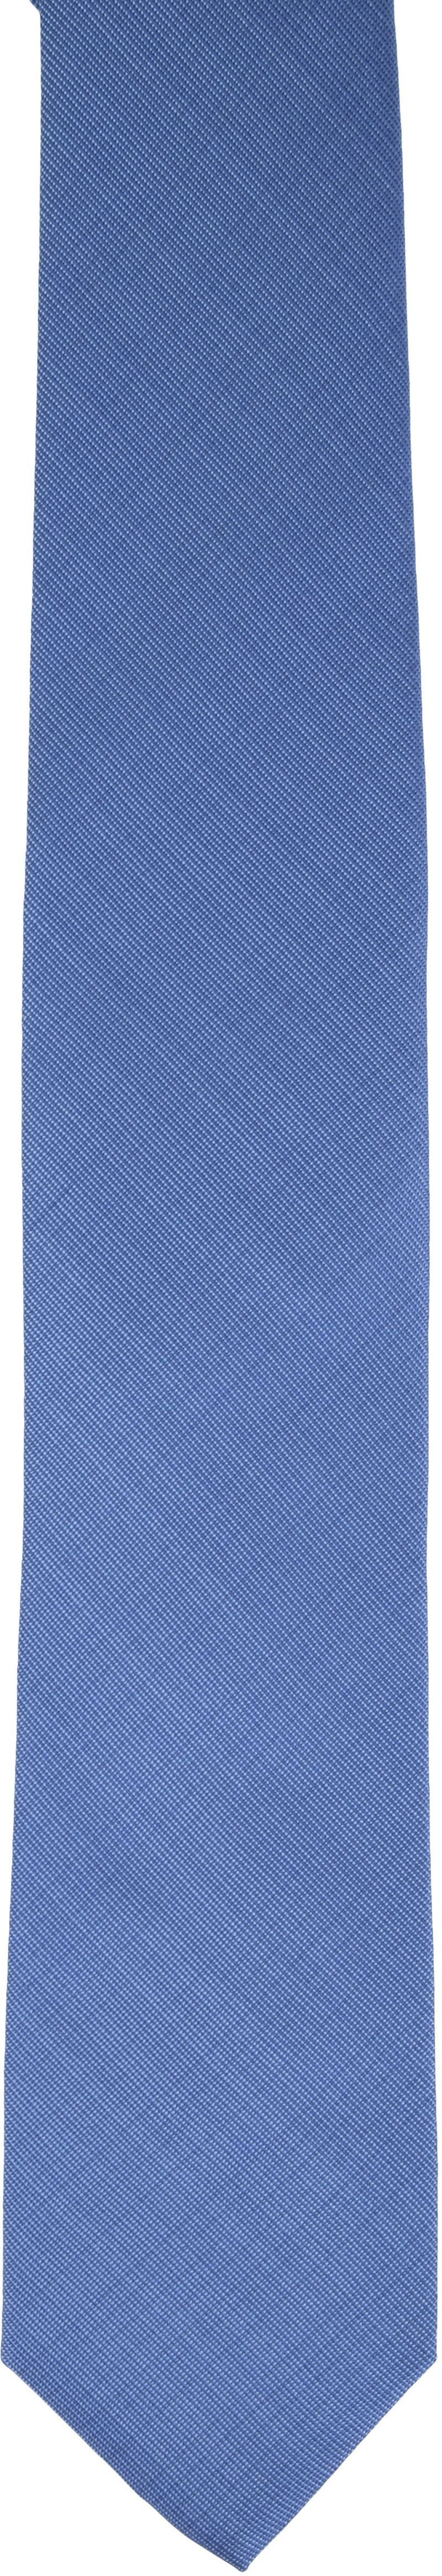 Krawatte Seide Blau K81-9 - günstig online kaufen